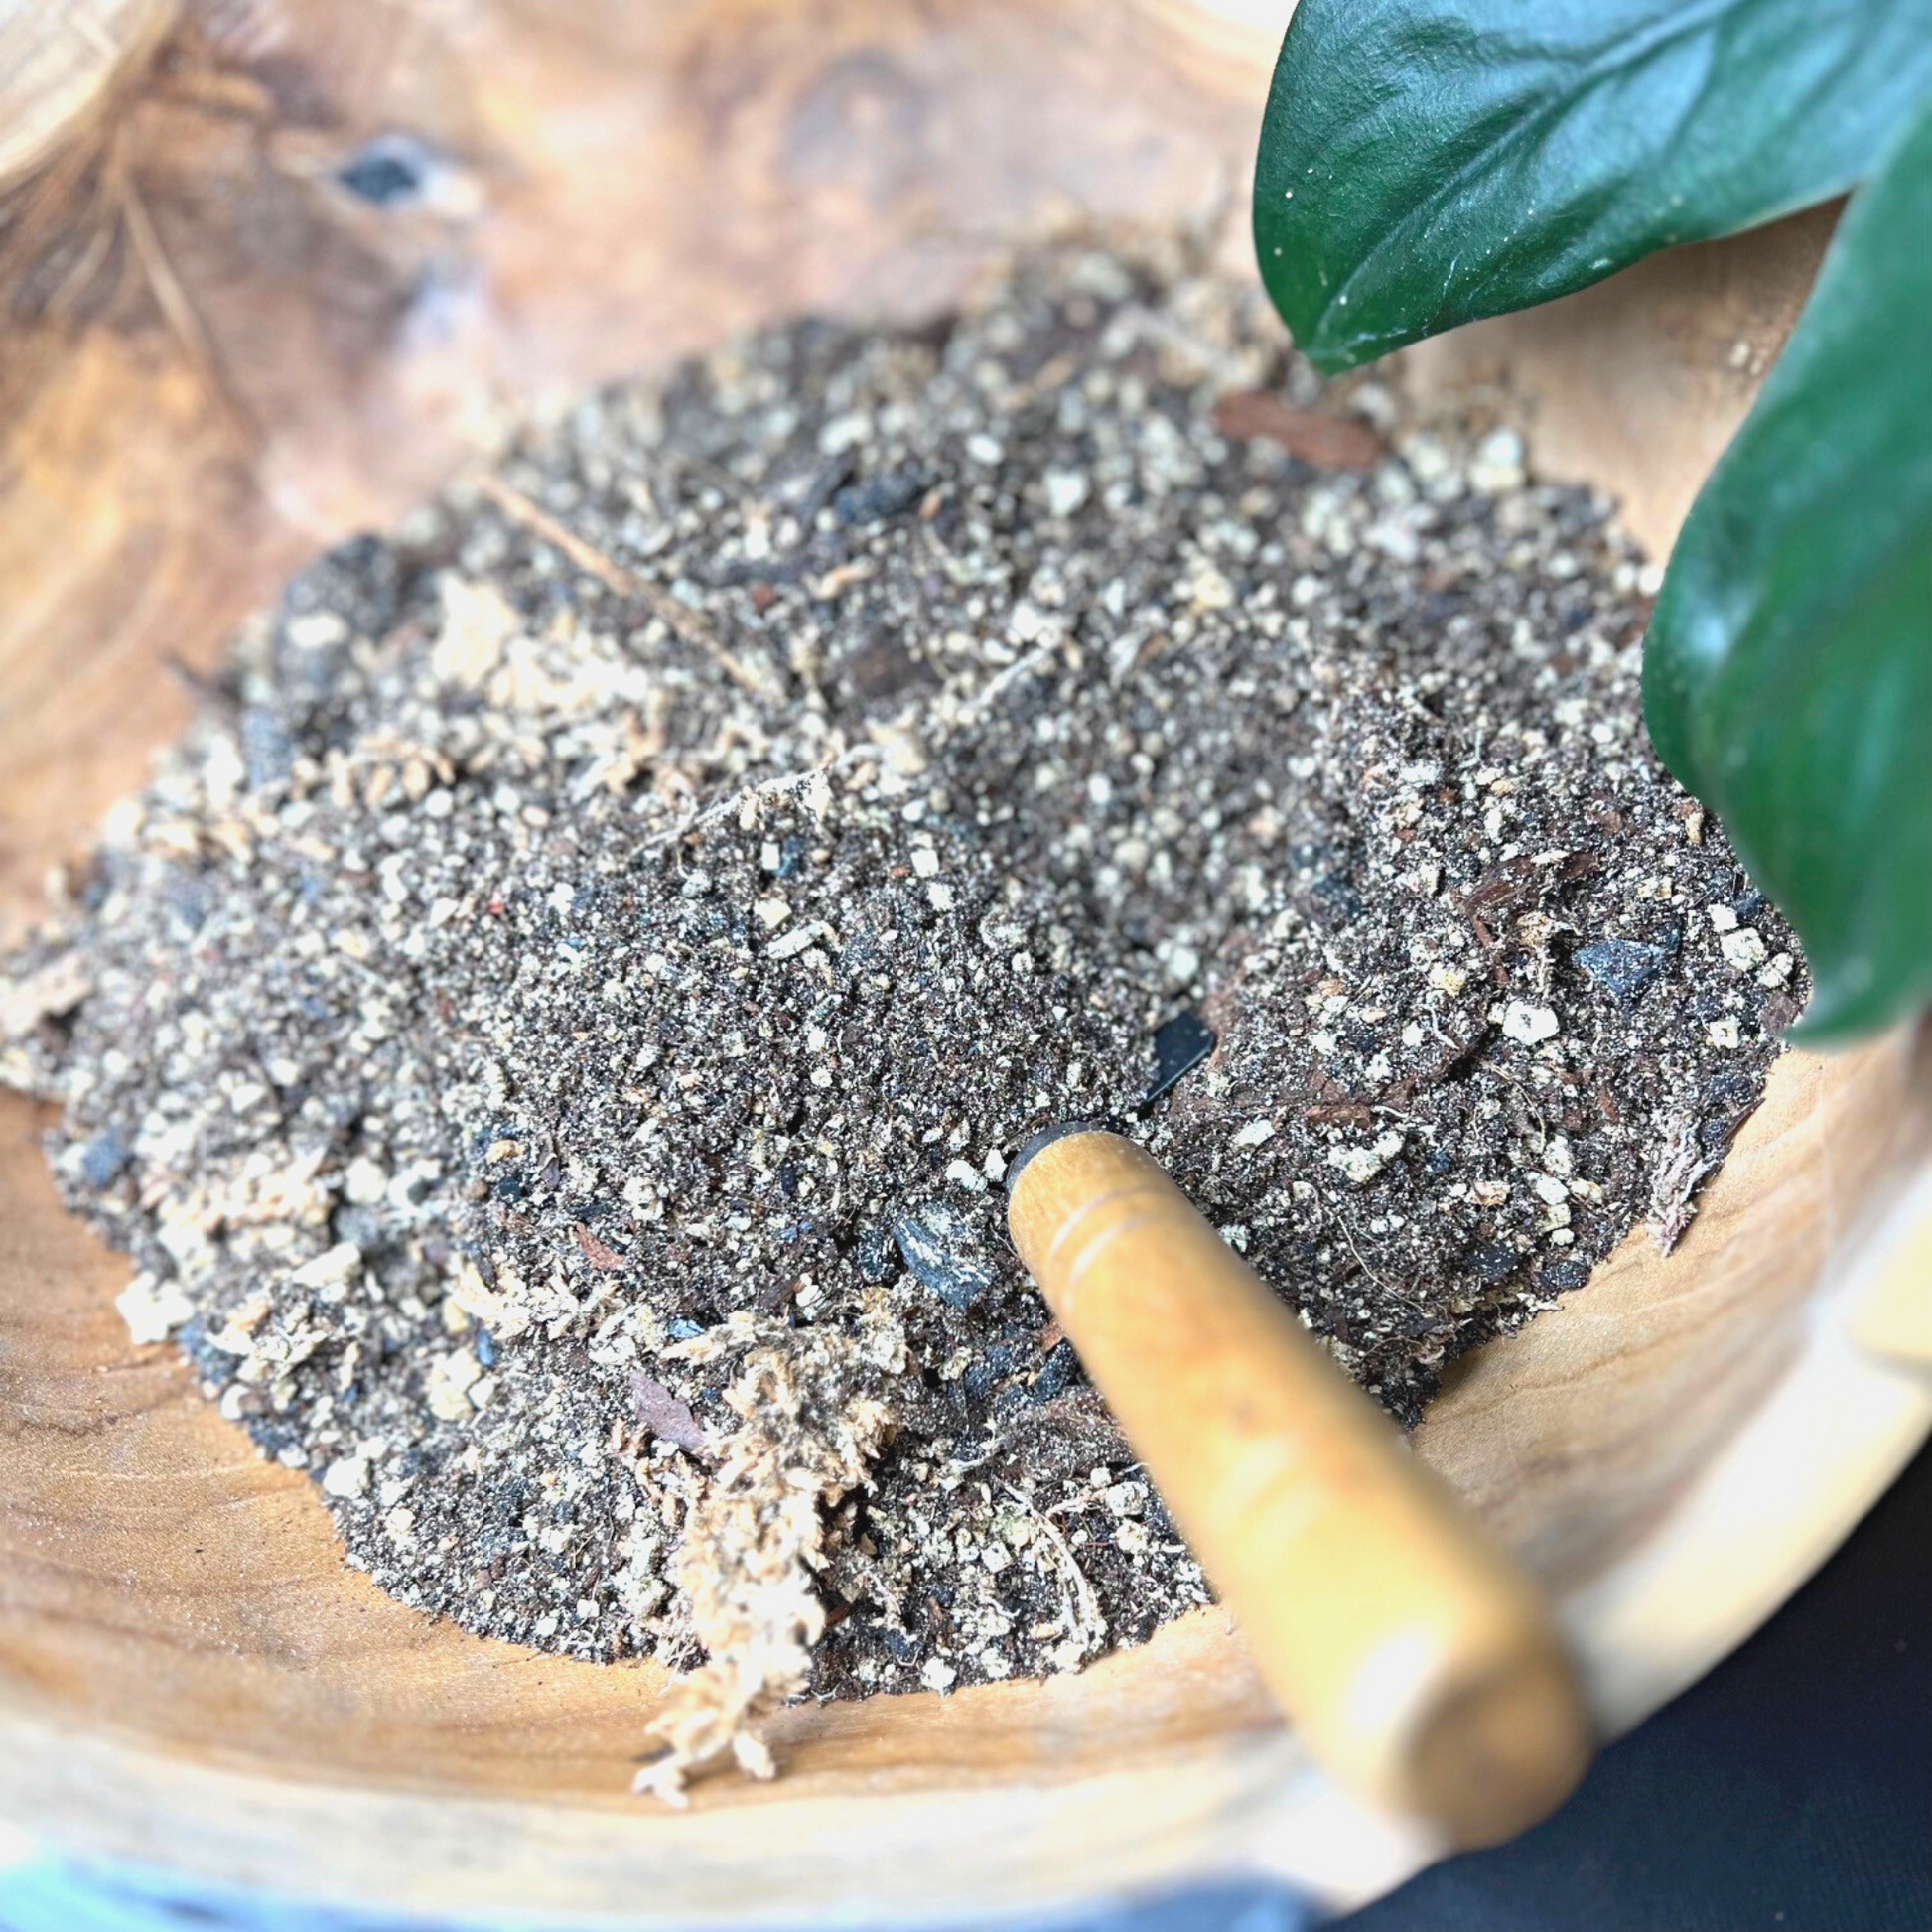 Premium Moss Growing Soil Mix *Terrarium Soil Mix* *House Plant Soil Mix*  2.2 lb